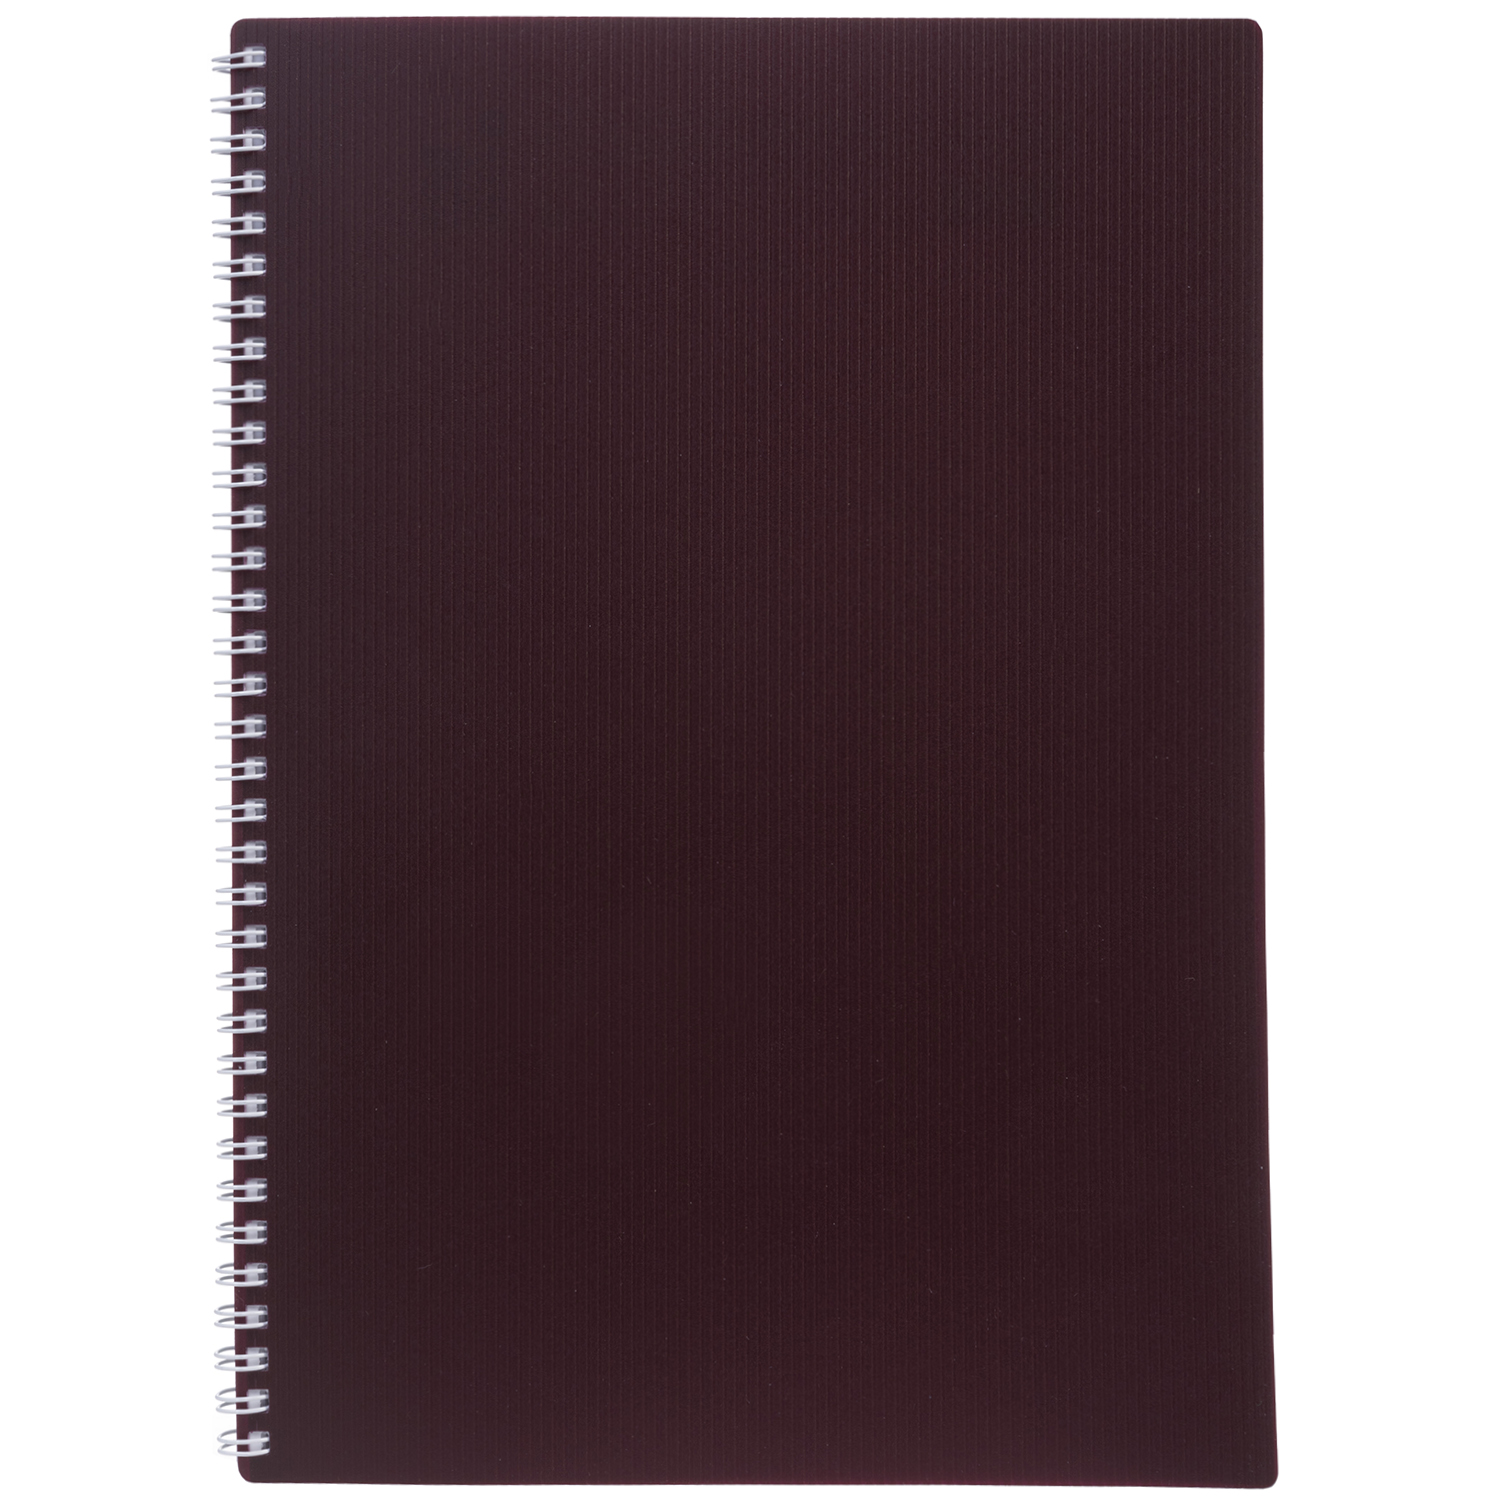 Тетрадь Hatber Velvet бордовый 081564 в клетку 80 л, А4, пластиковая обложка на гребне